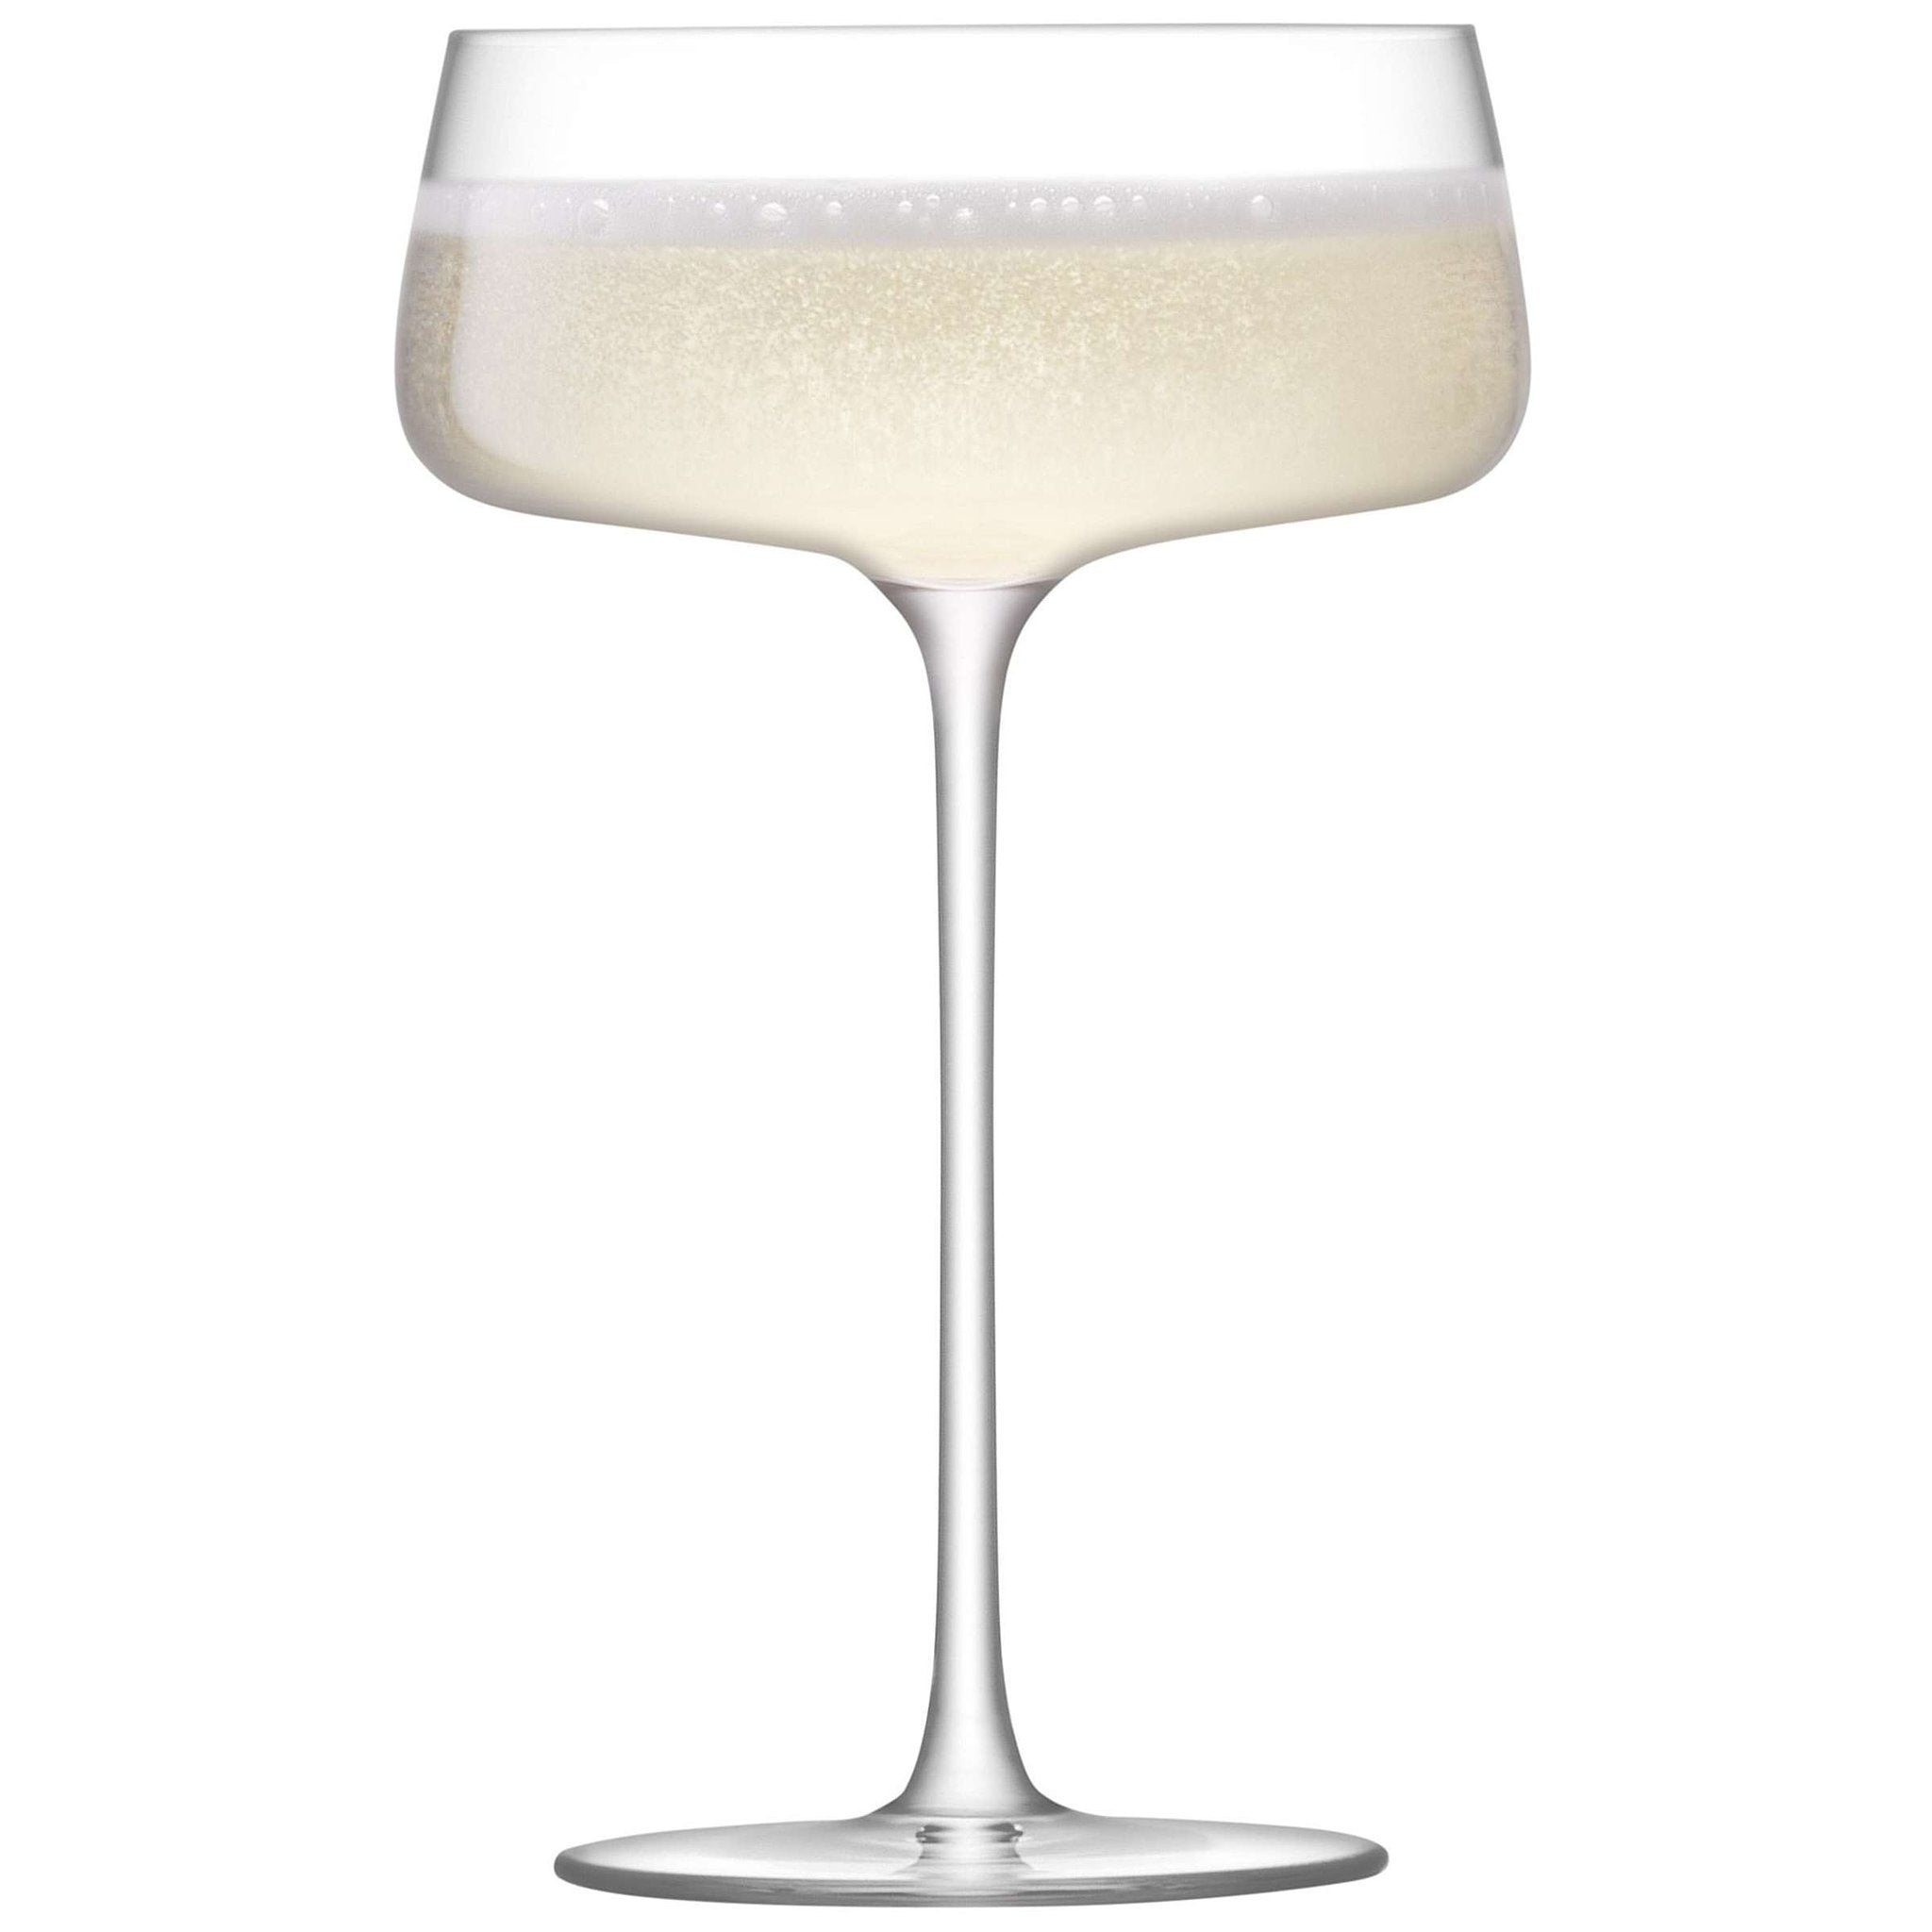 L.S.A. - Metropolitan Champagneglas 300 ml Set van 4 Stuks